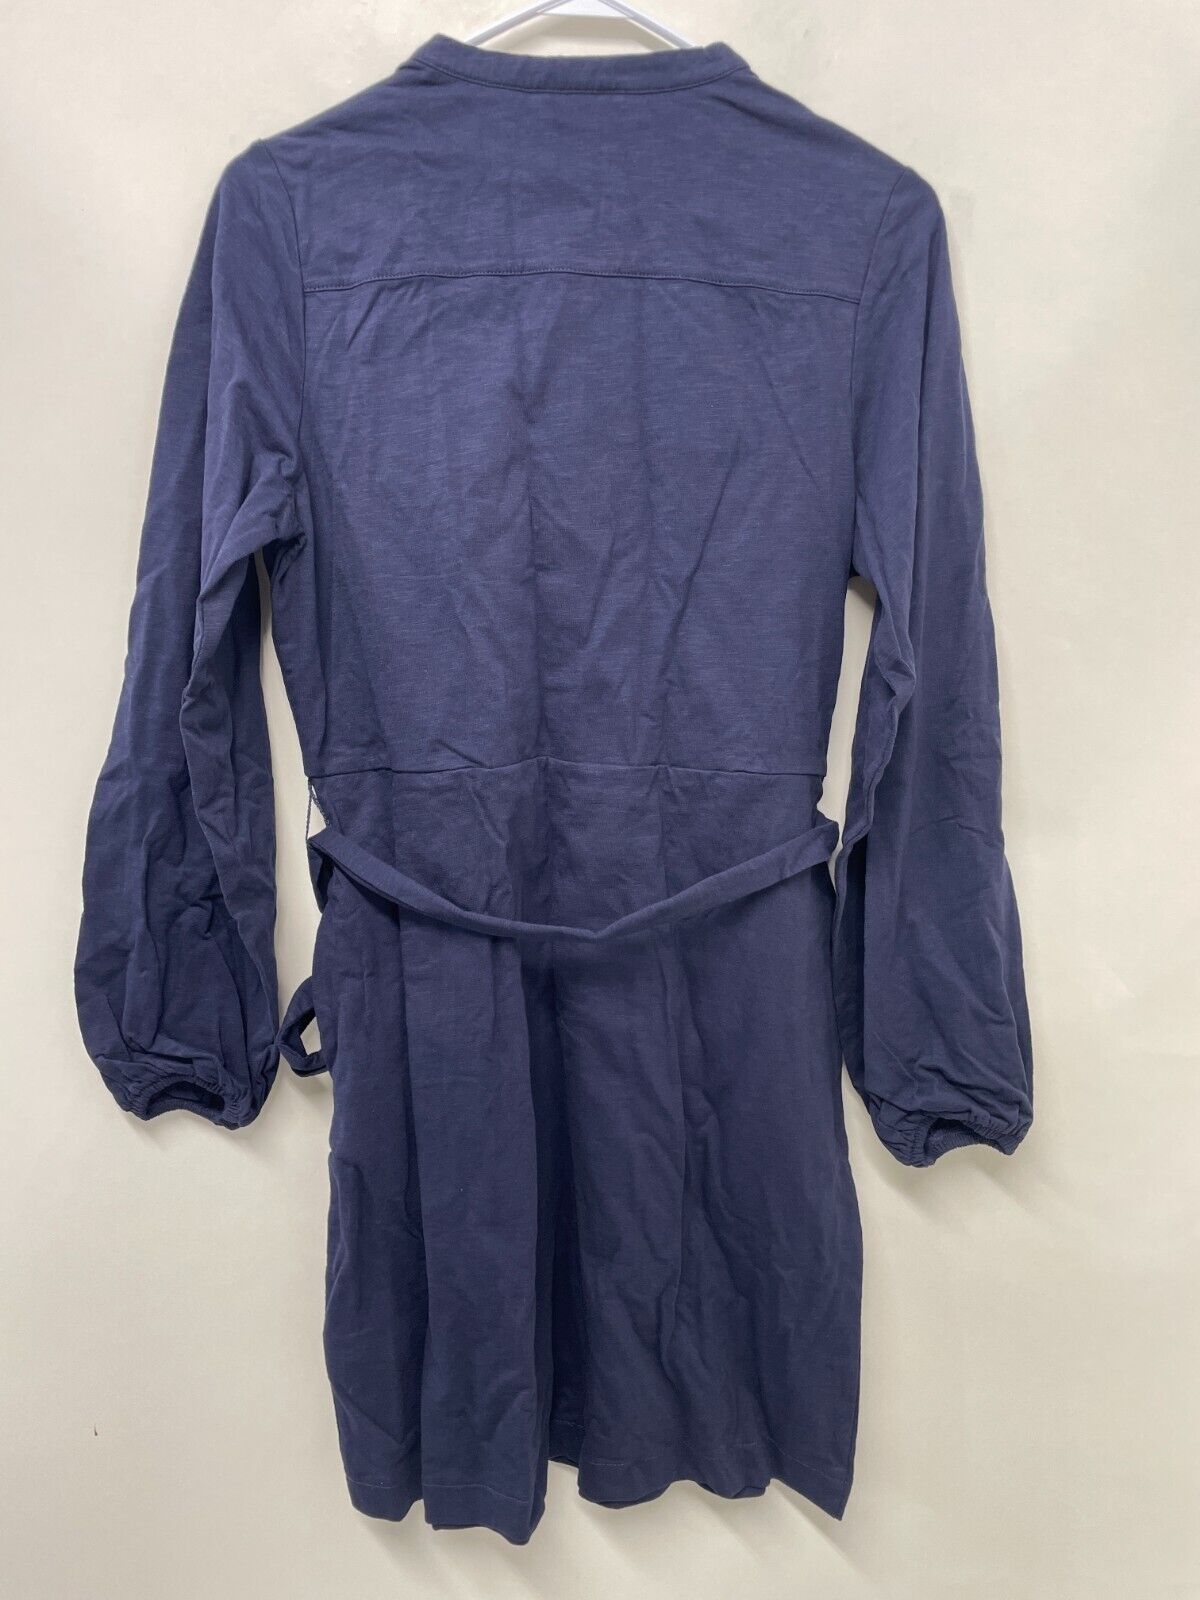 Boden Womens 8R Shirt Dress Navy Solid Cotton Jersey Long Sleeve Belted D0327